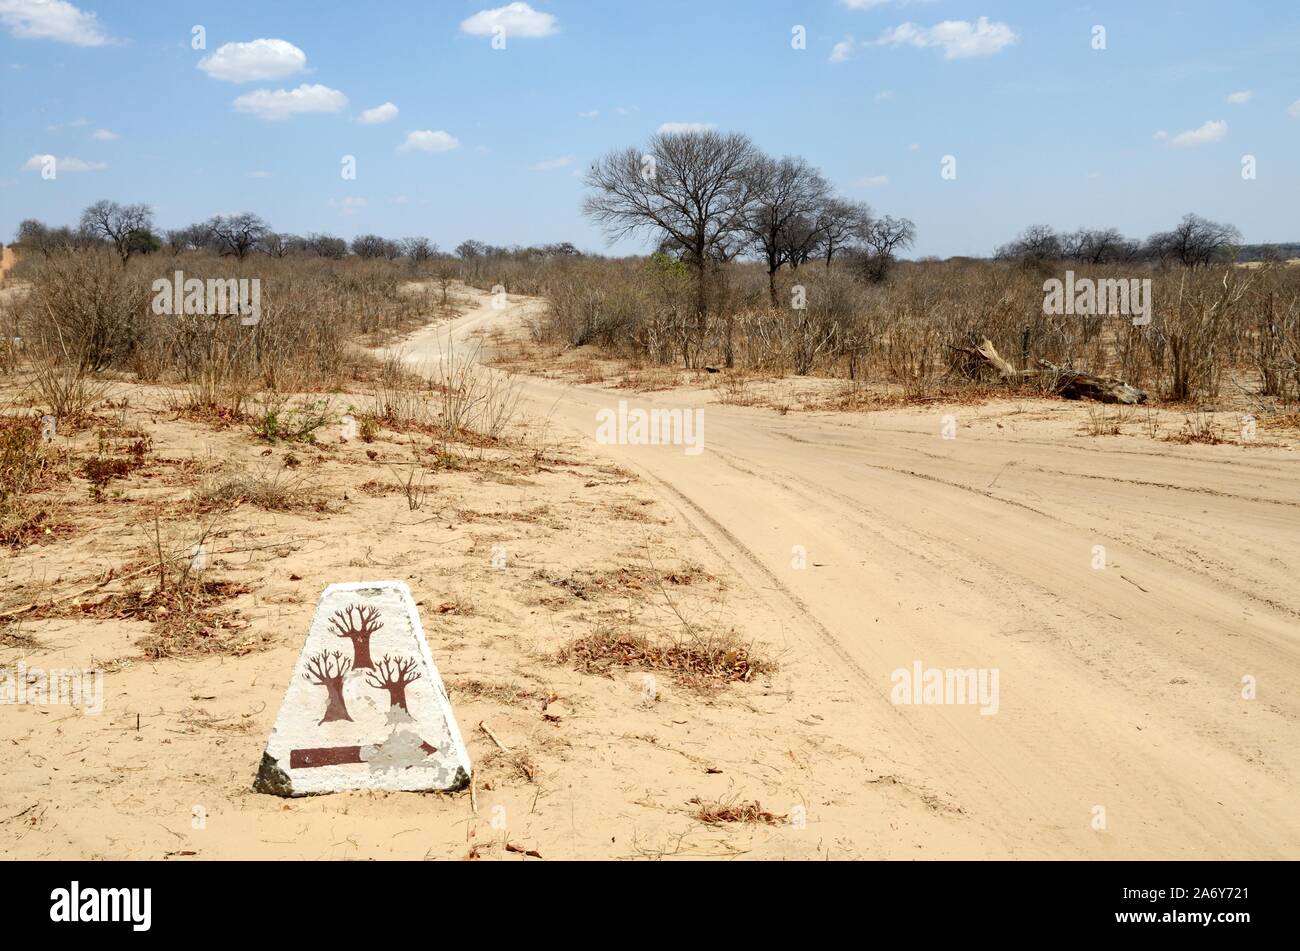 Pierre peinte avec baobab tréesused comme marqueur sur la route de sable Chobe parc national Botswana Afrique Banque D'Images